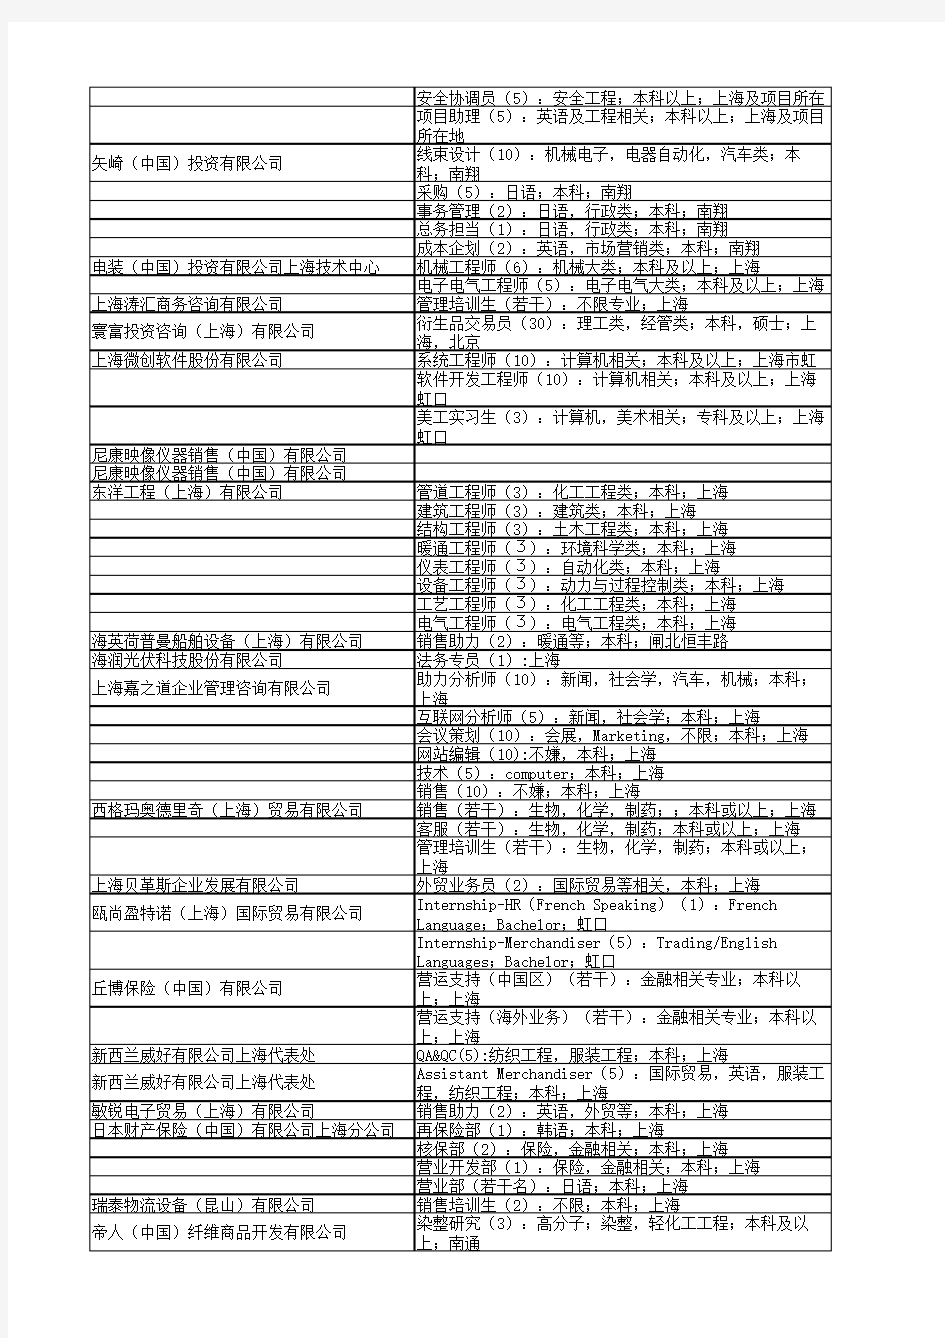 上海西南片五高校2013届毕业生联合招聘会参会单位名单